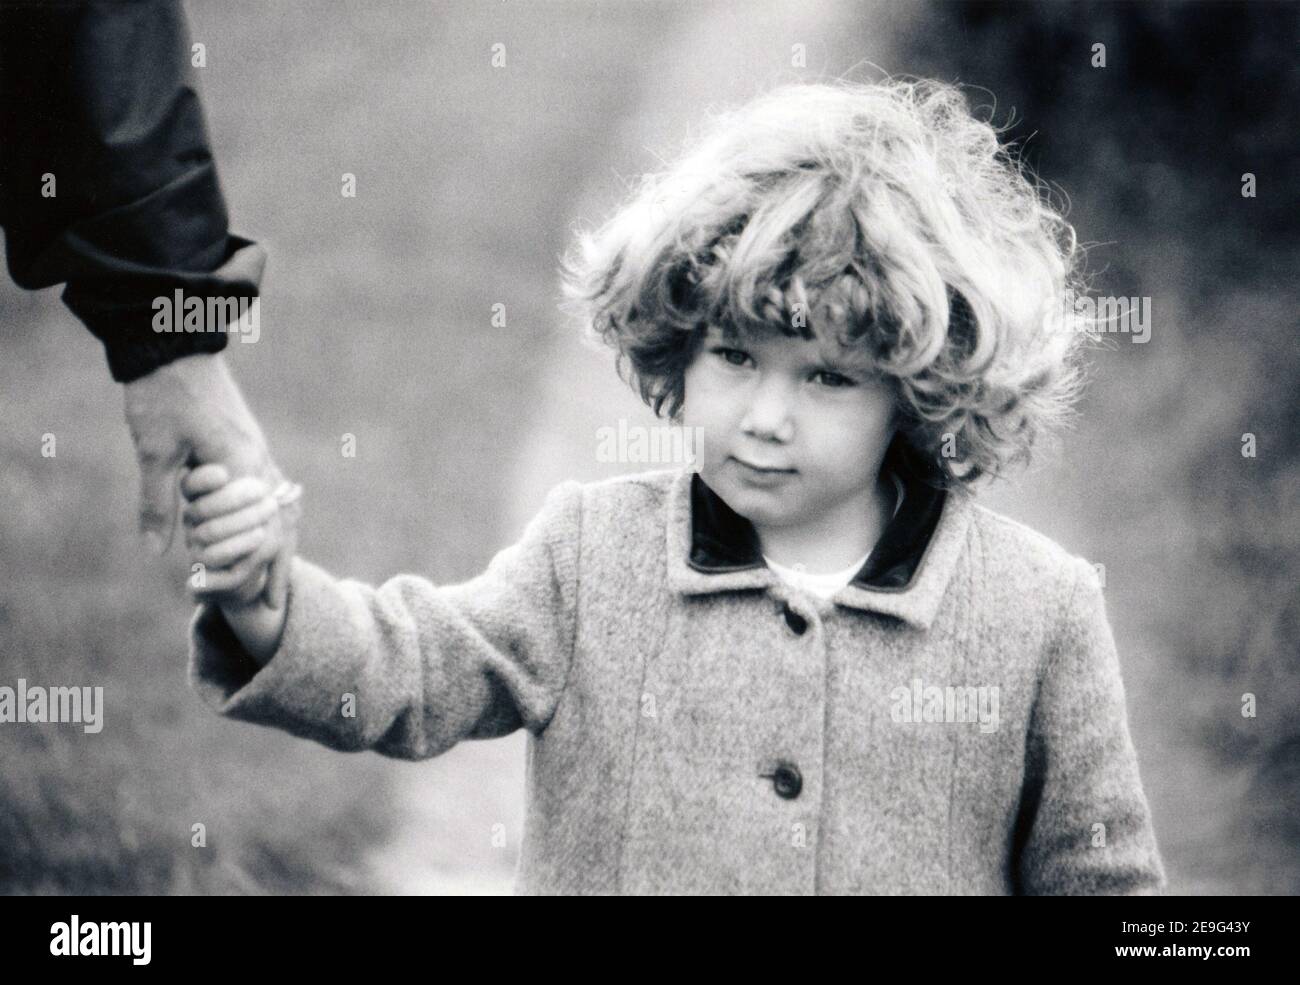 vintage après la guerre portrait monochrome de petite fille en train de cacher la main d'adulte, c. années 1950 Banque D'Images